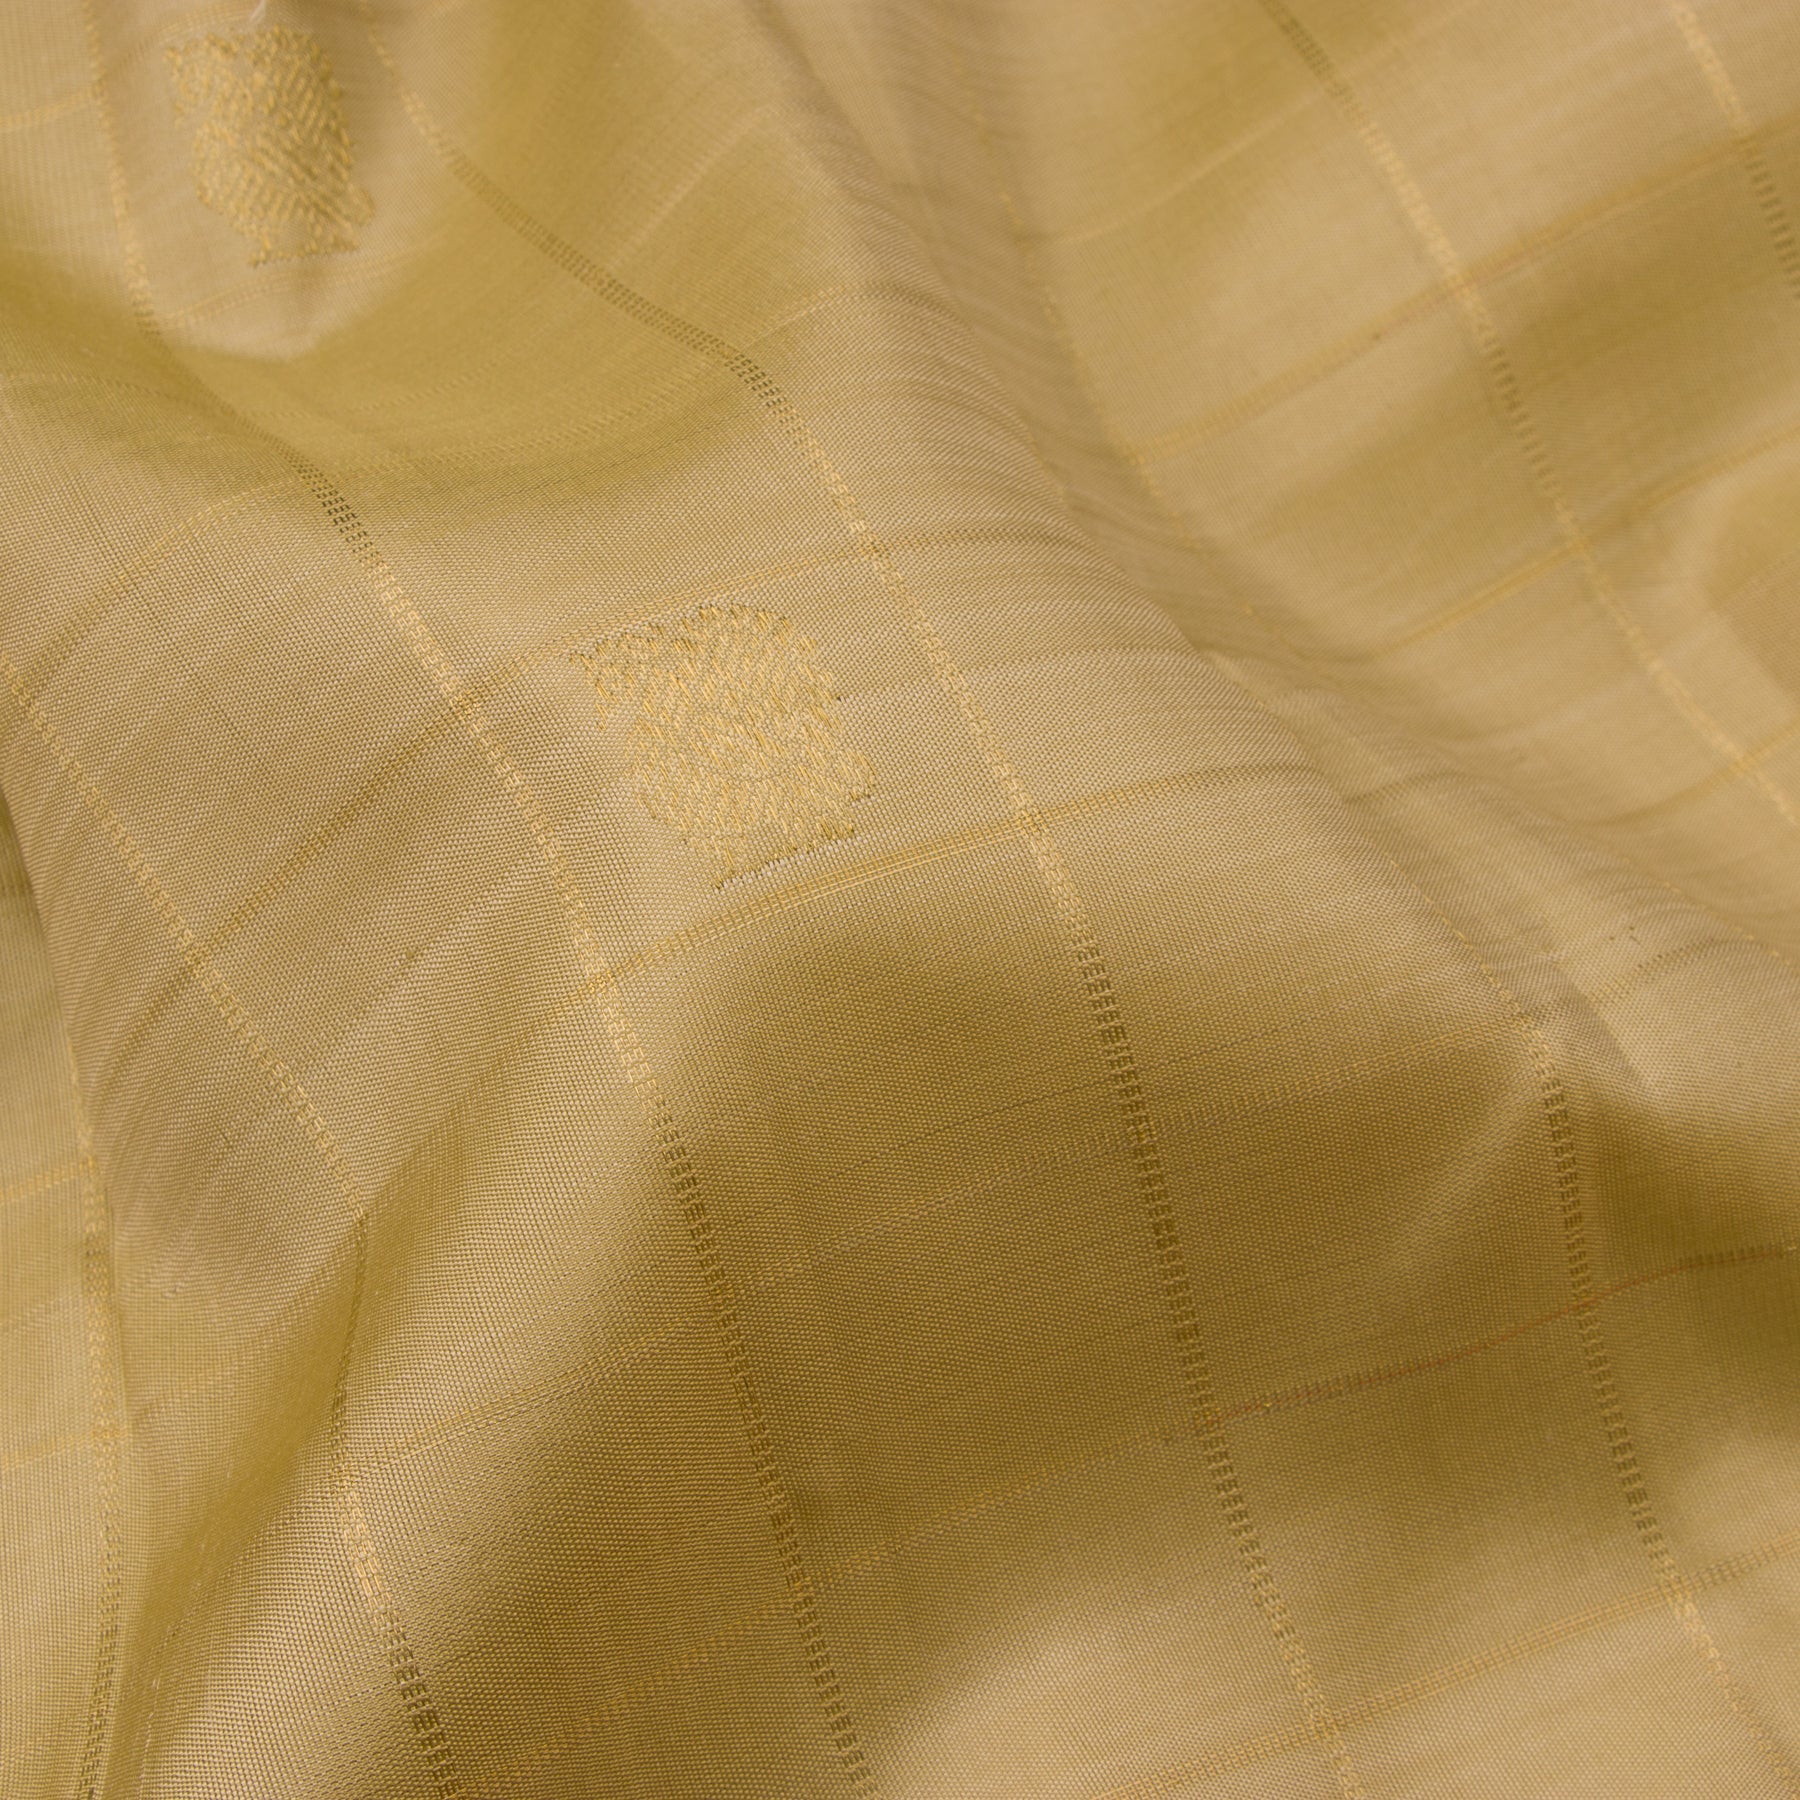 Kanakavalli Kanjivaram Silk Sari 22-595-HS001-10234 - Fabric View